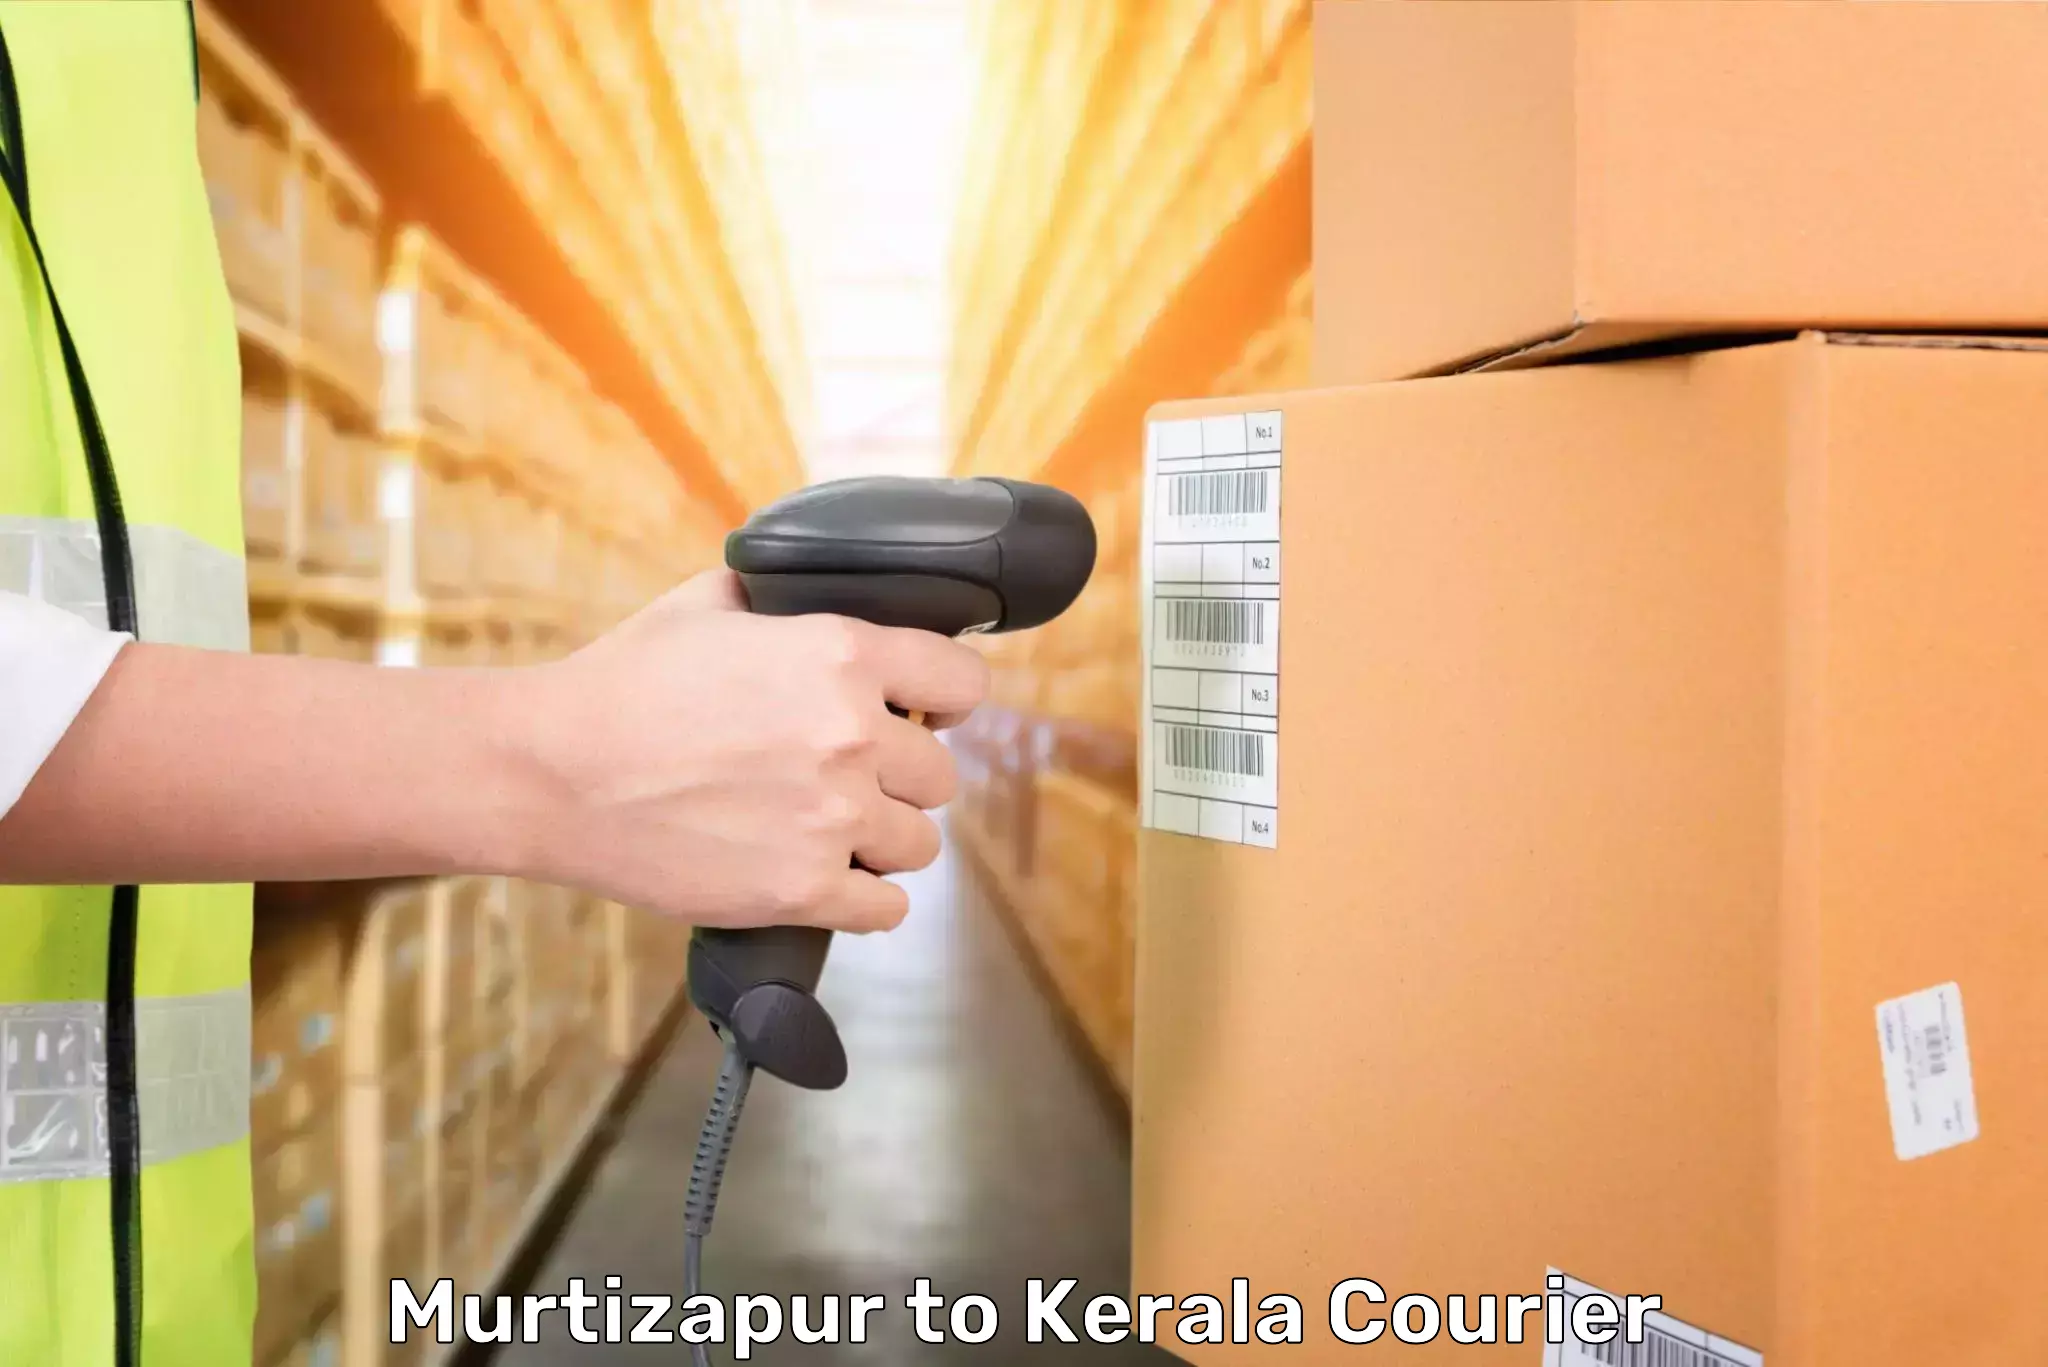 Door-to-door baggage service in Murtizapur to Kerala